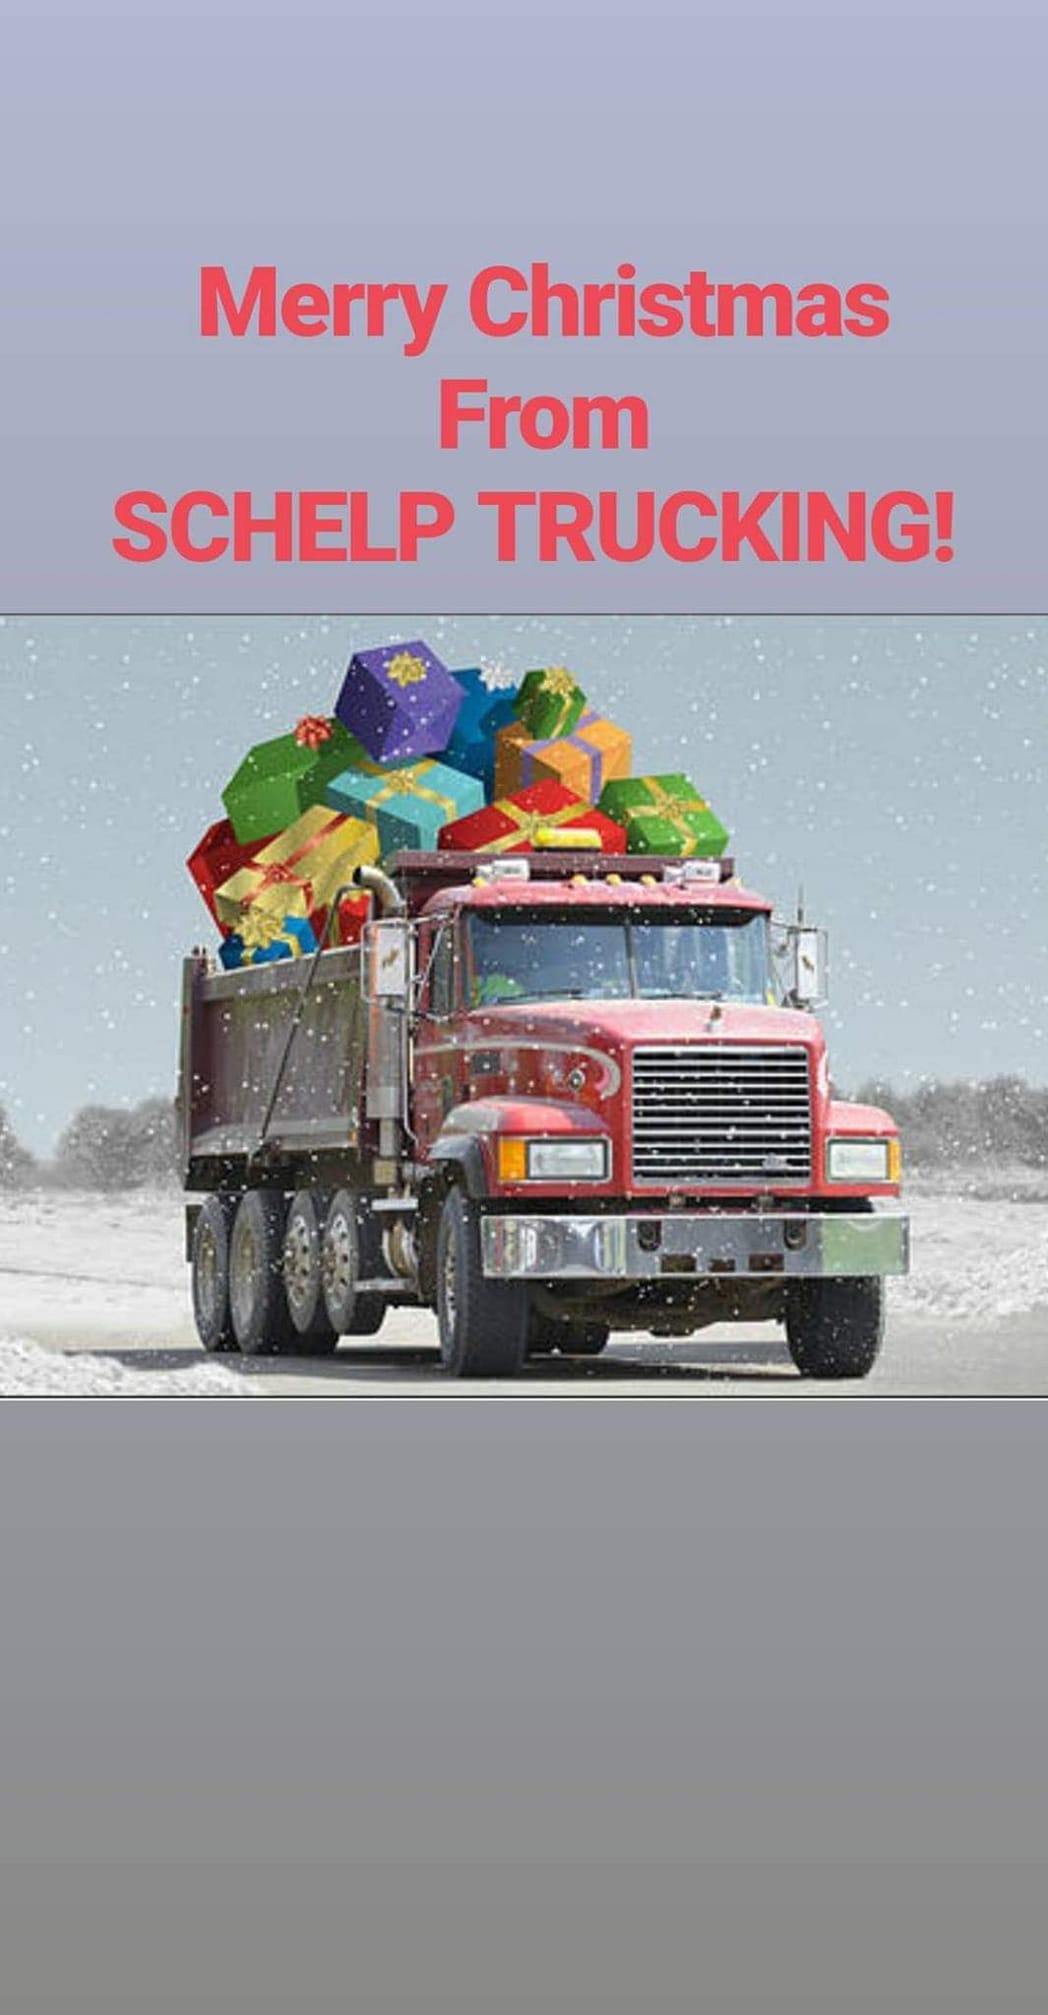 Schelp Trucking LLC 203 Cherry, Emma Missouri 65327